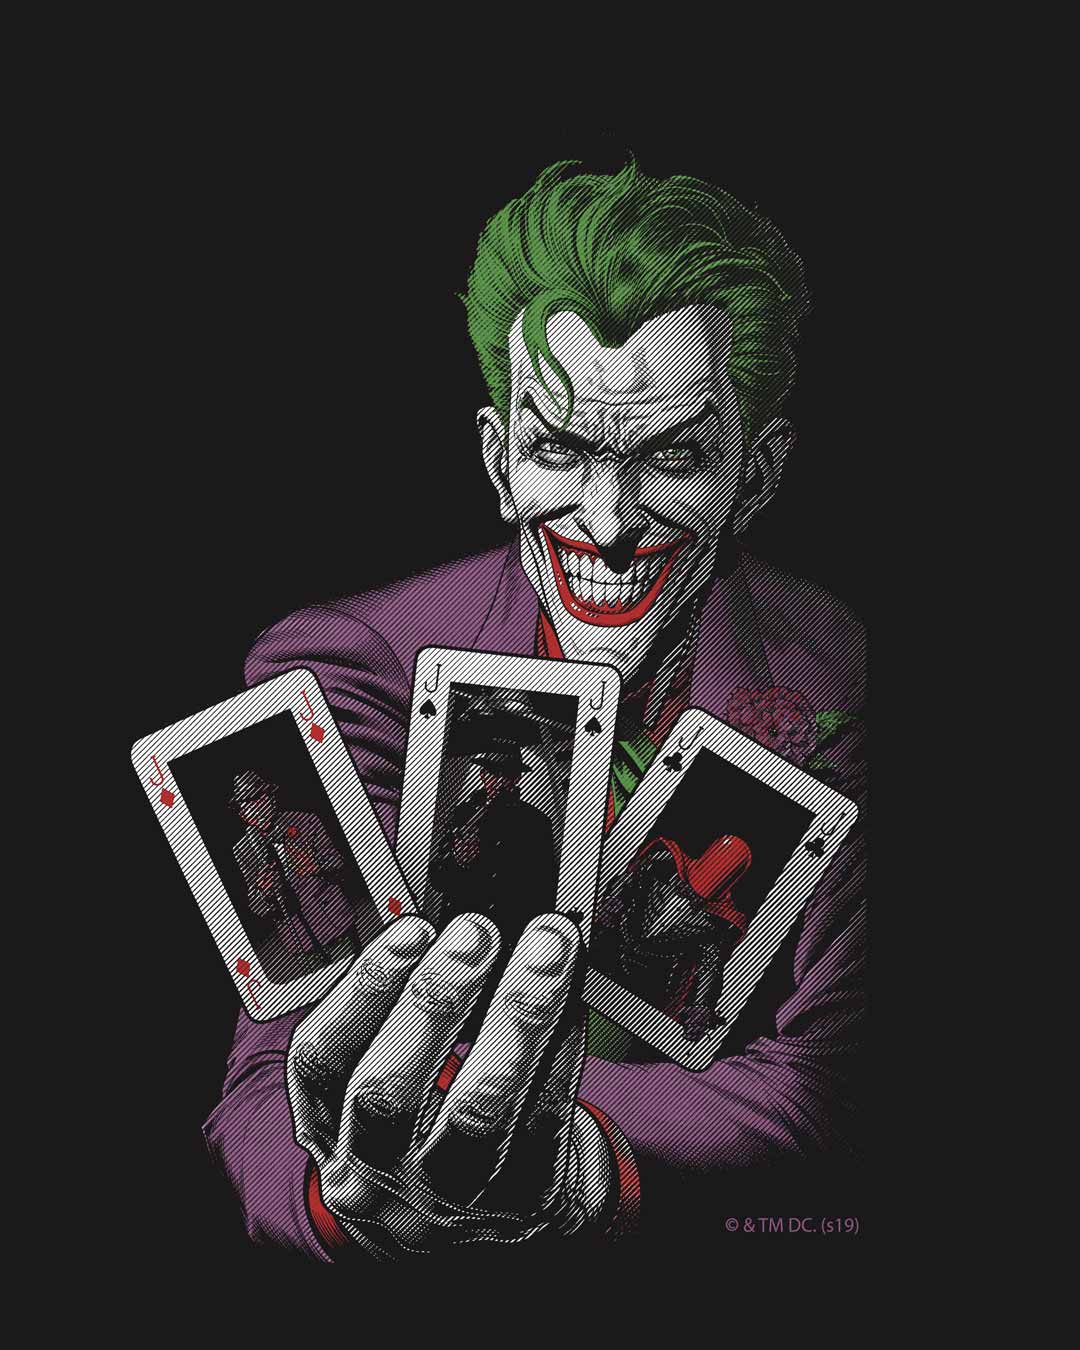 joker card t shirt